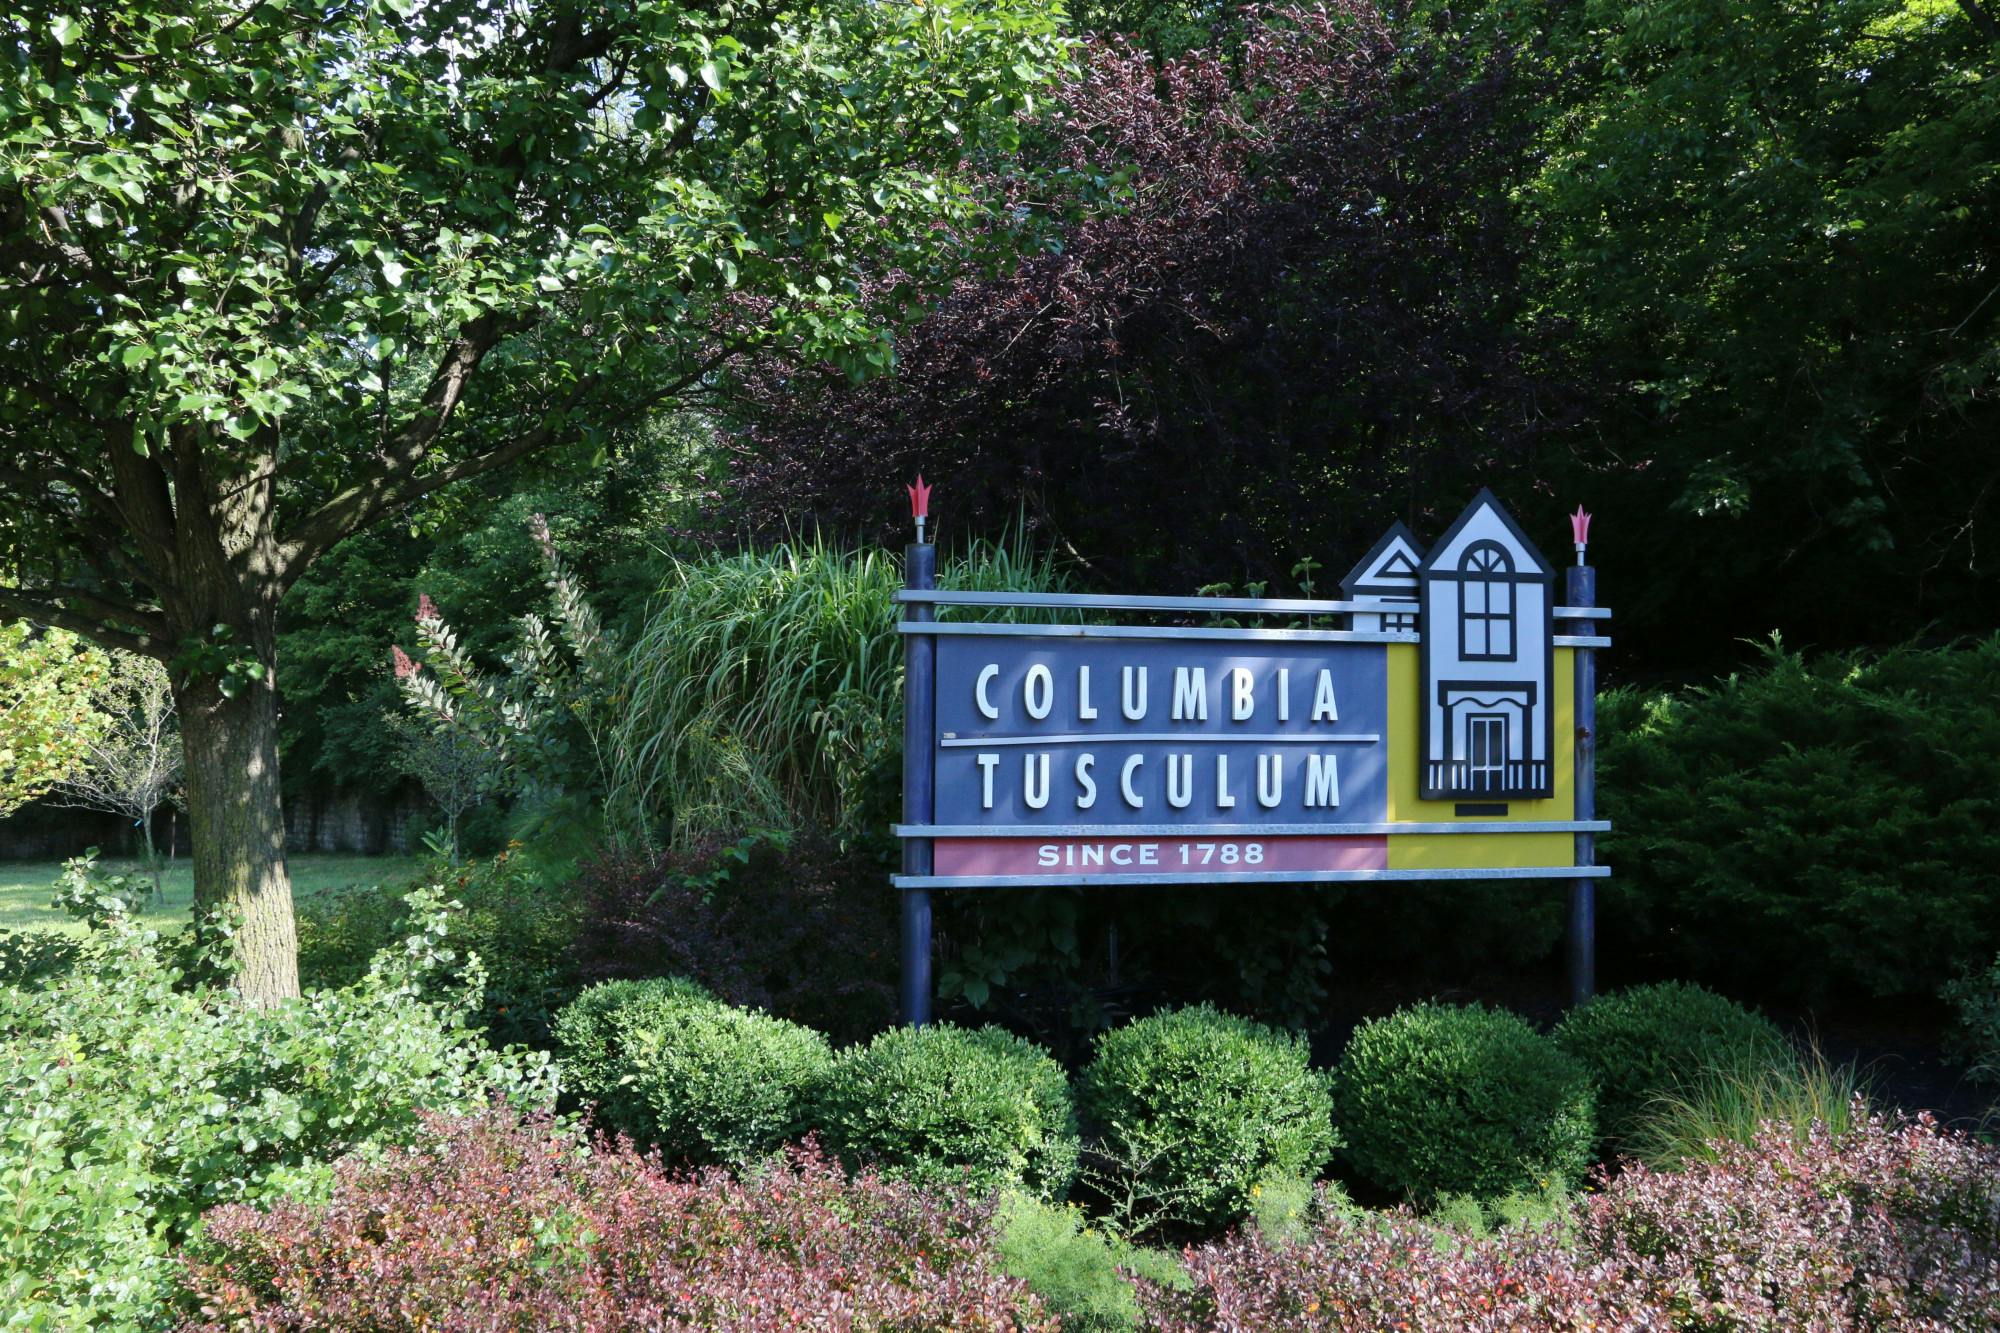 Columbia Tusculum